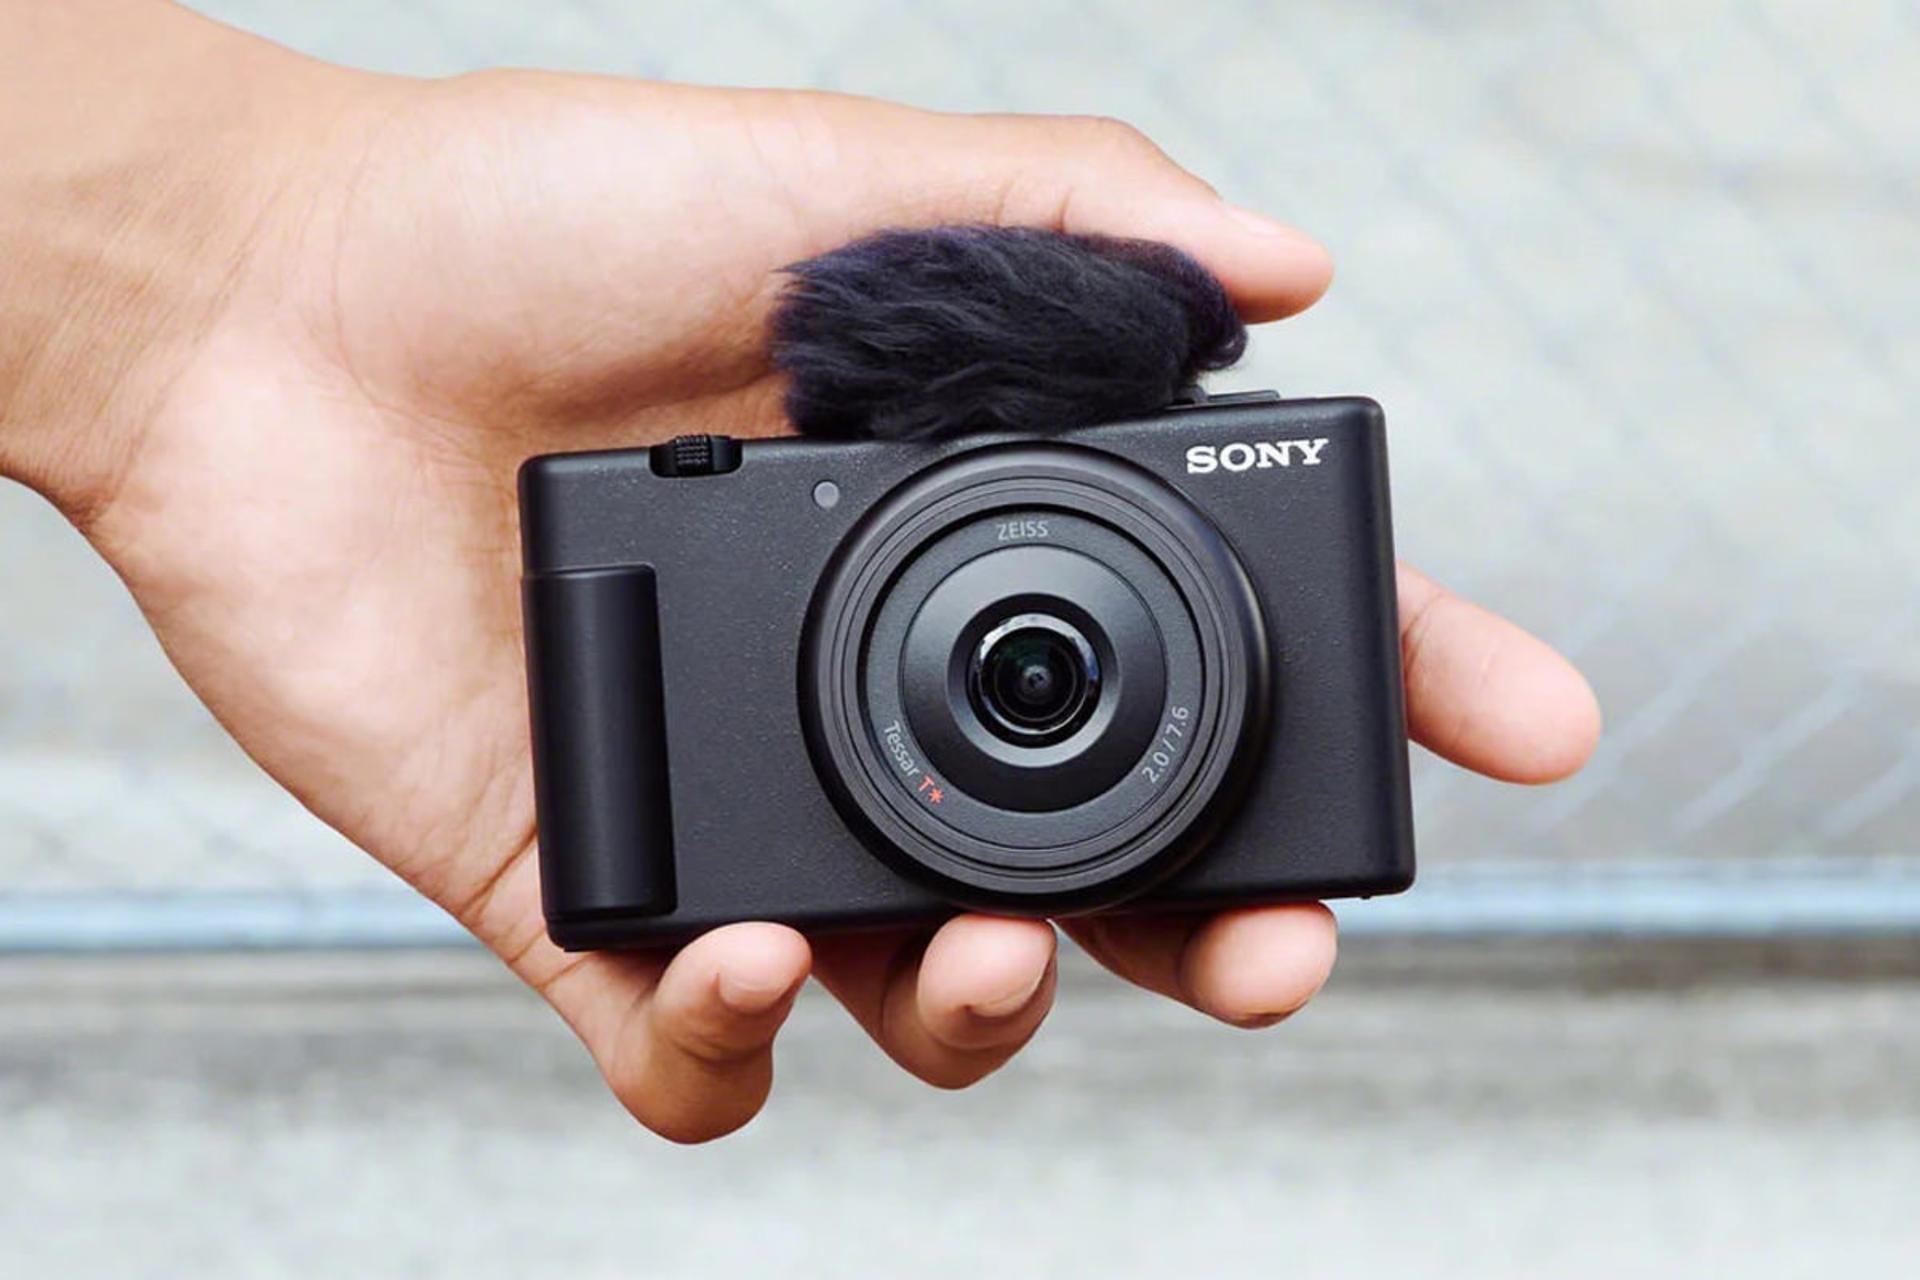 دوربین سونی Sony ZV-1F ولاگ در دست از نمای جلو